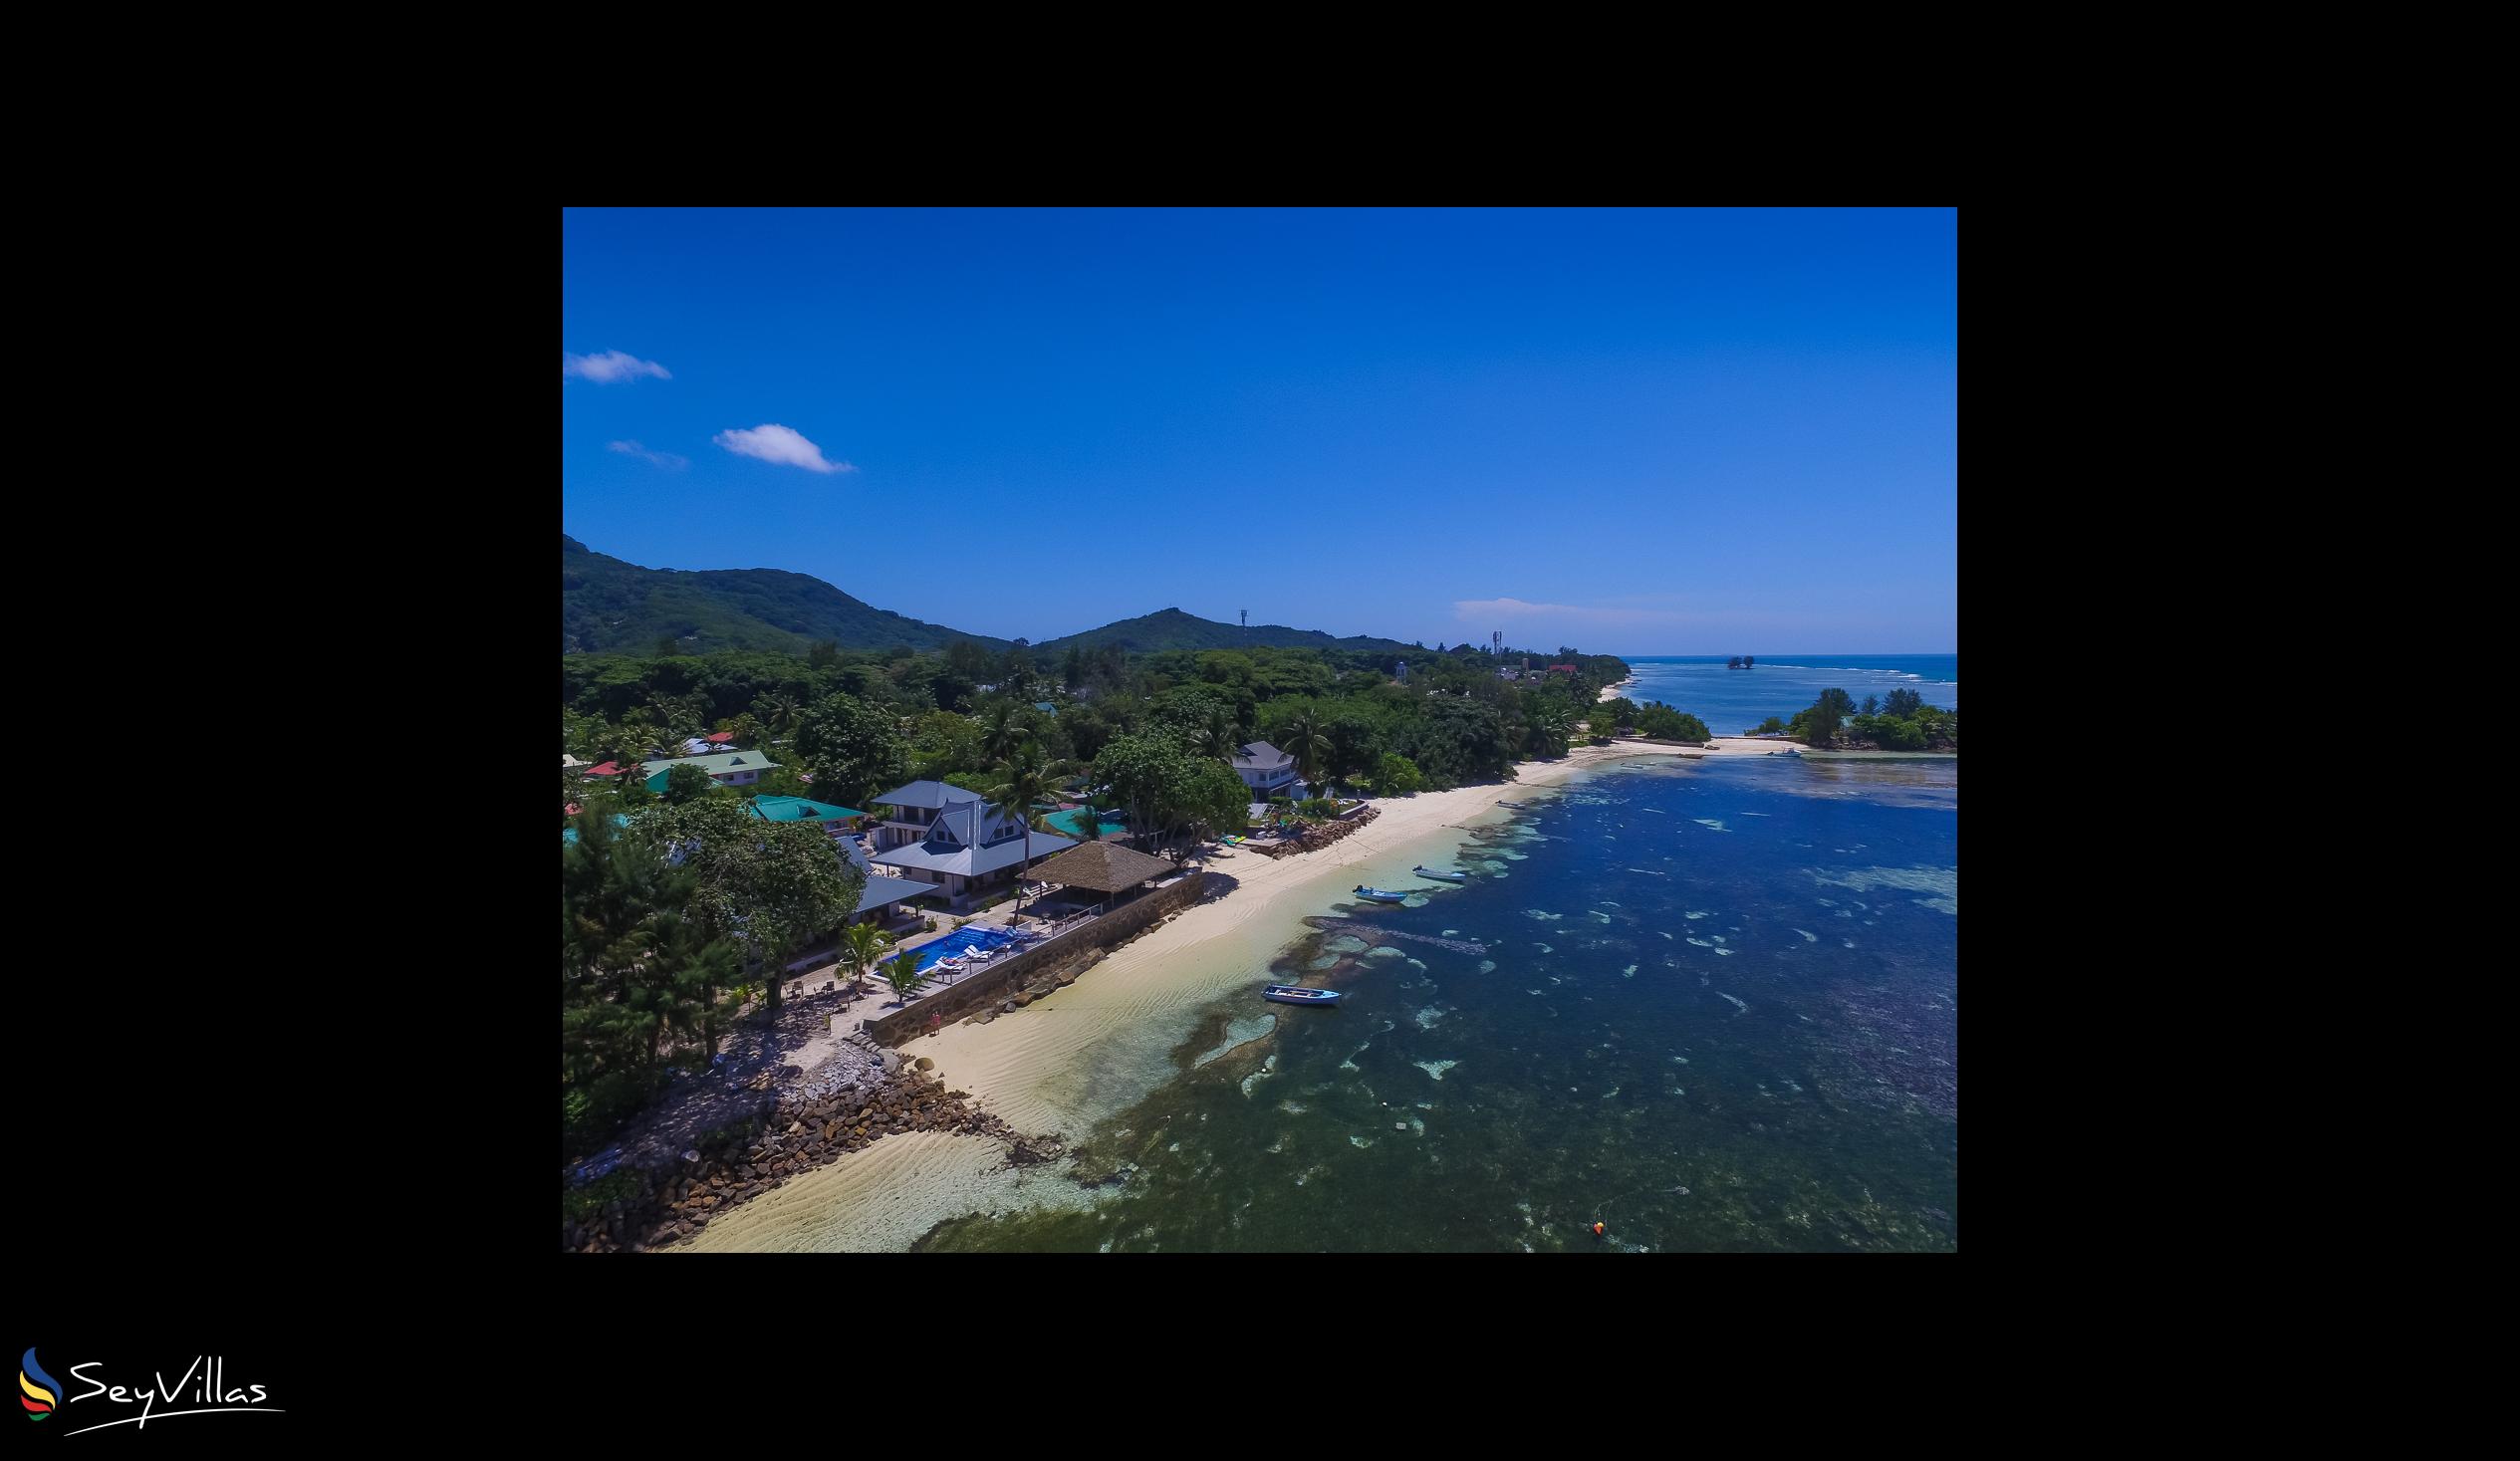 Foto 78: Le Nautique Luxury Waterfront Hotel - Location - La Digue (Seychelles)